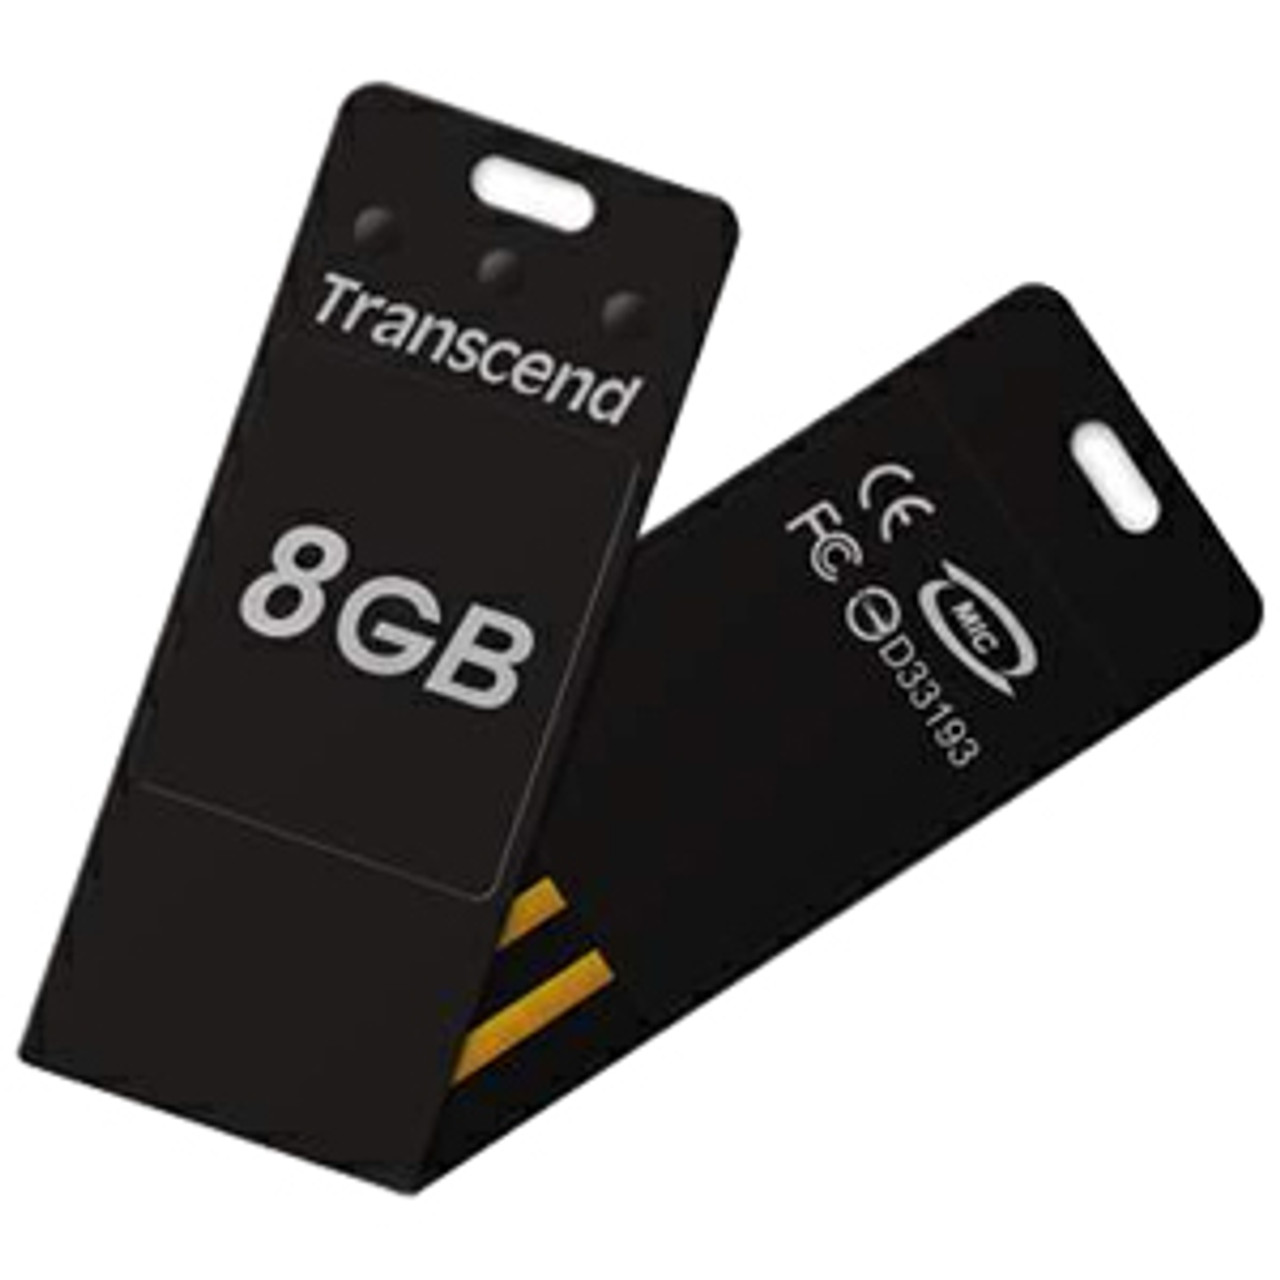 TS8GJFT3W - Transcend 8GB JetFlash USB 2.0 Flash Drive - 8 GB - USB - External